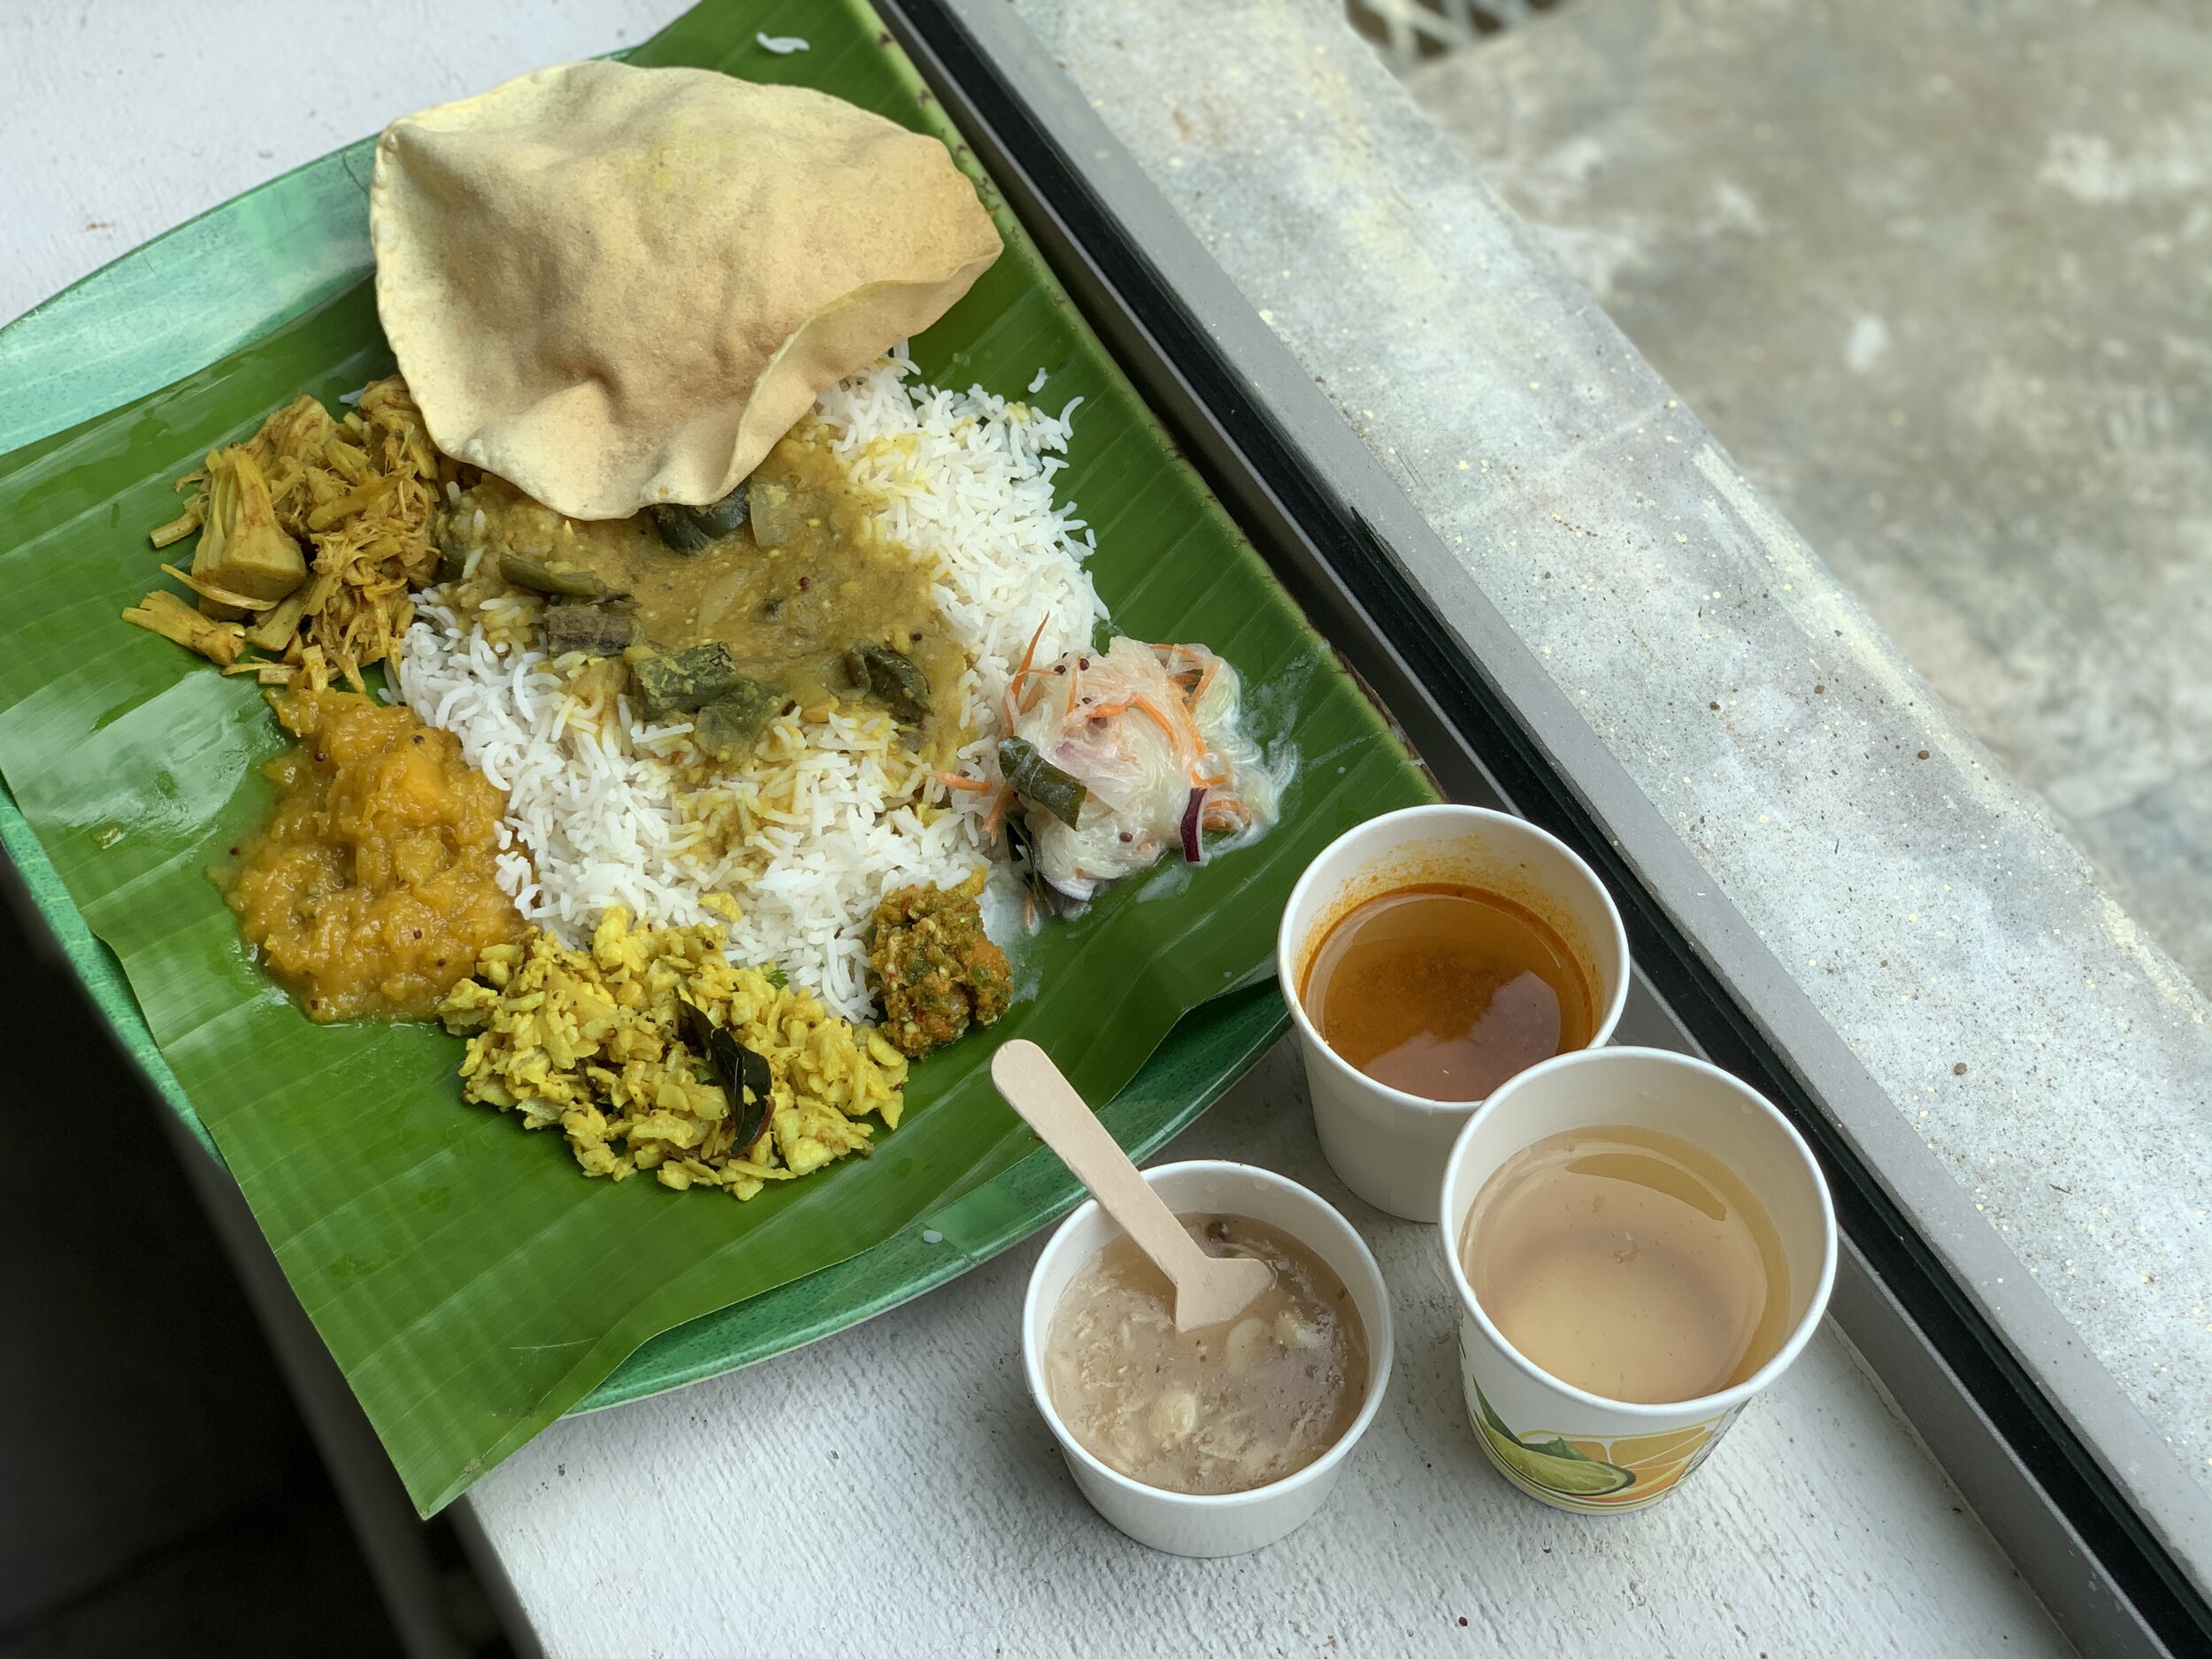 古老的印度教经文告诉我们，一顿均衡的饭包含了arusuvai，即六种基本味道:inippu(甜)、pulippu(酸)、oovaruppu(咸)、kaarppu(辣)、kasappu(苦)和thuvarppu(涩)。